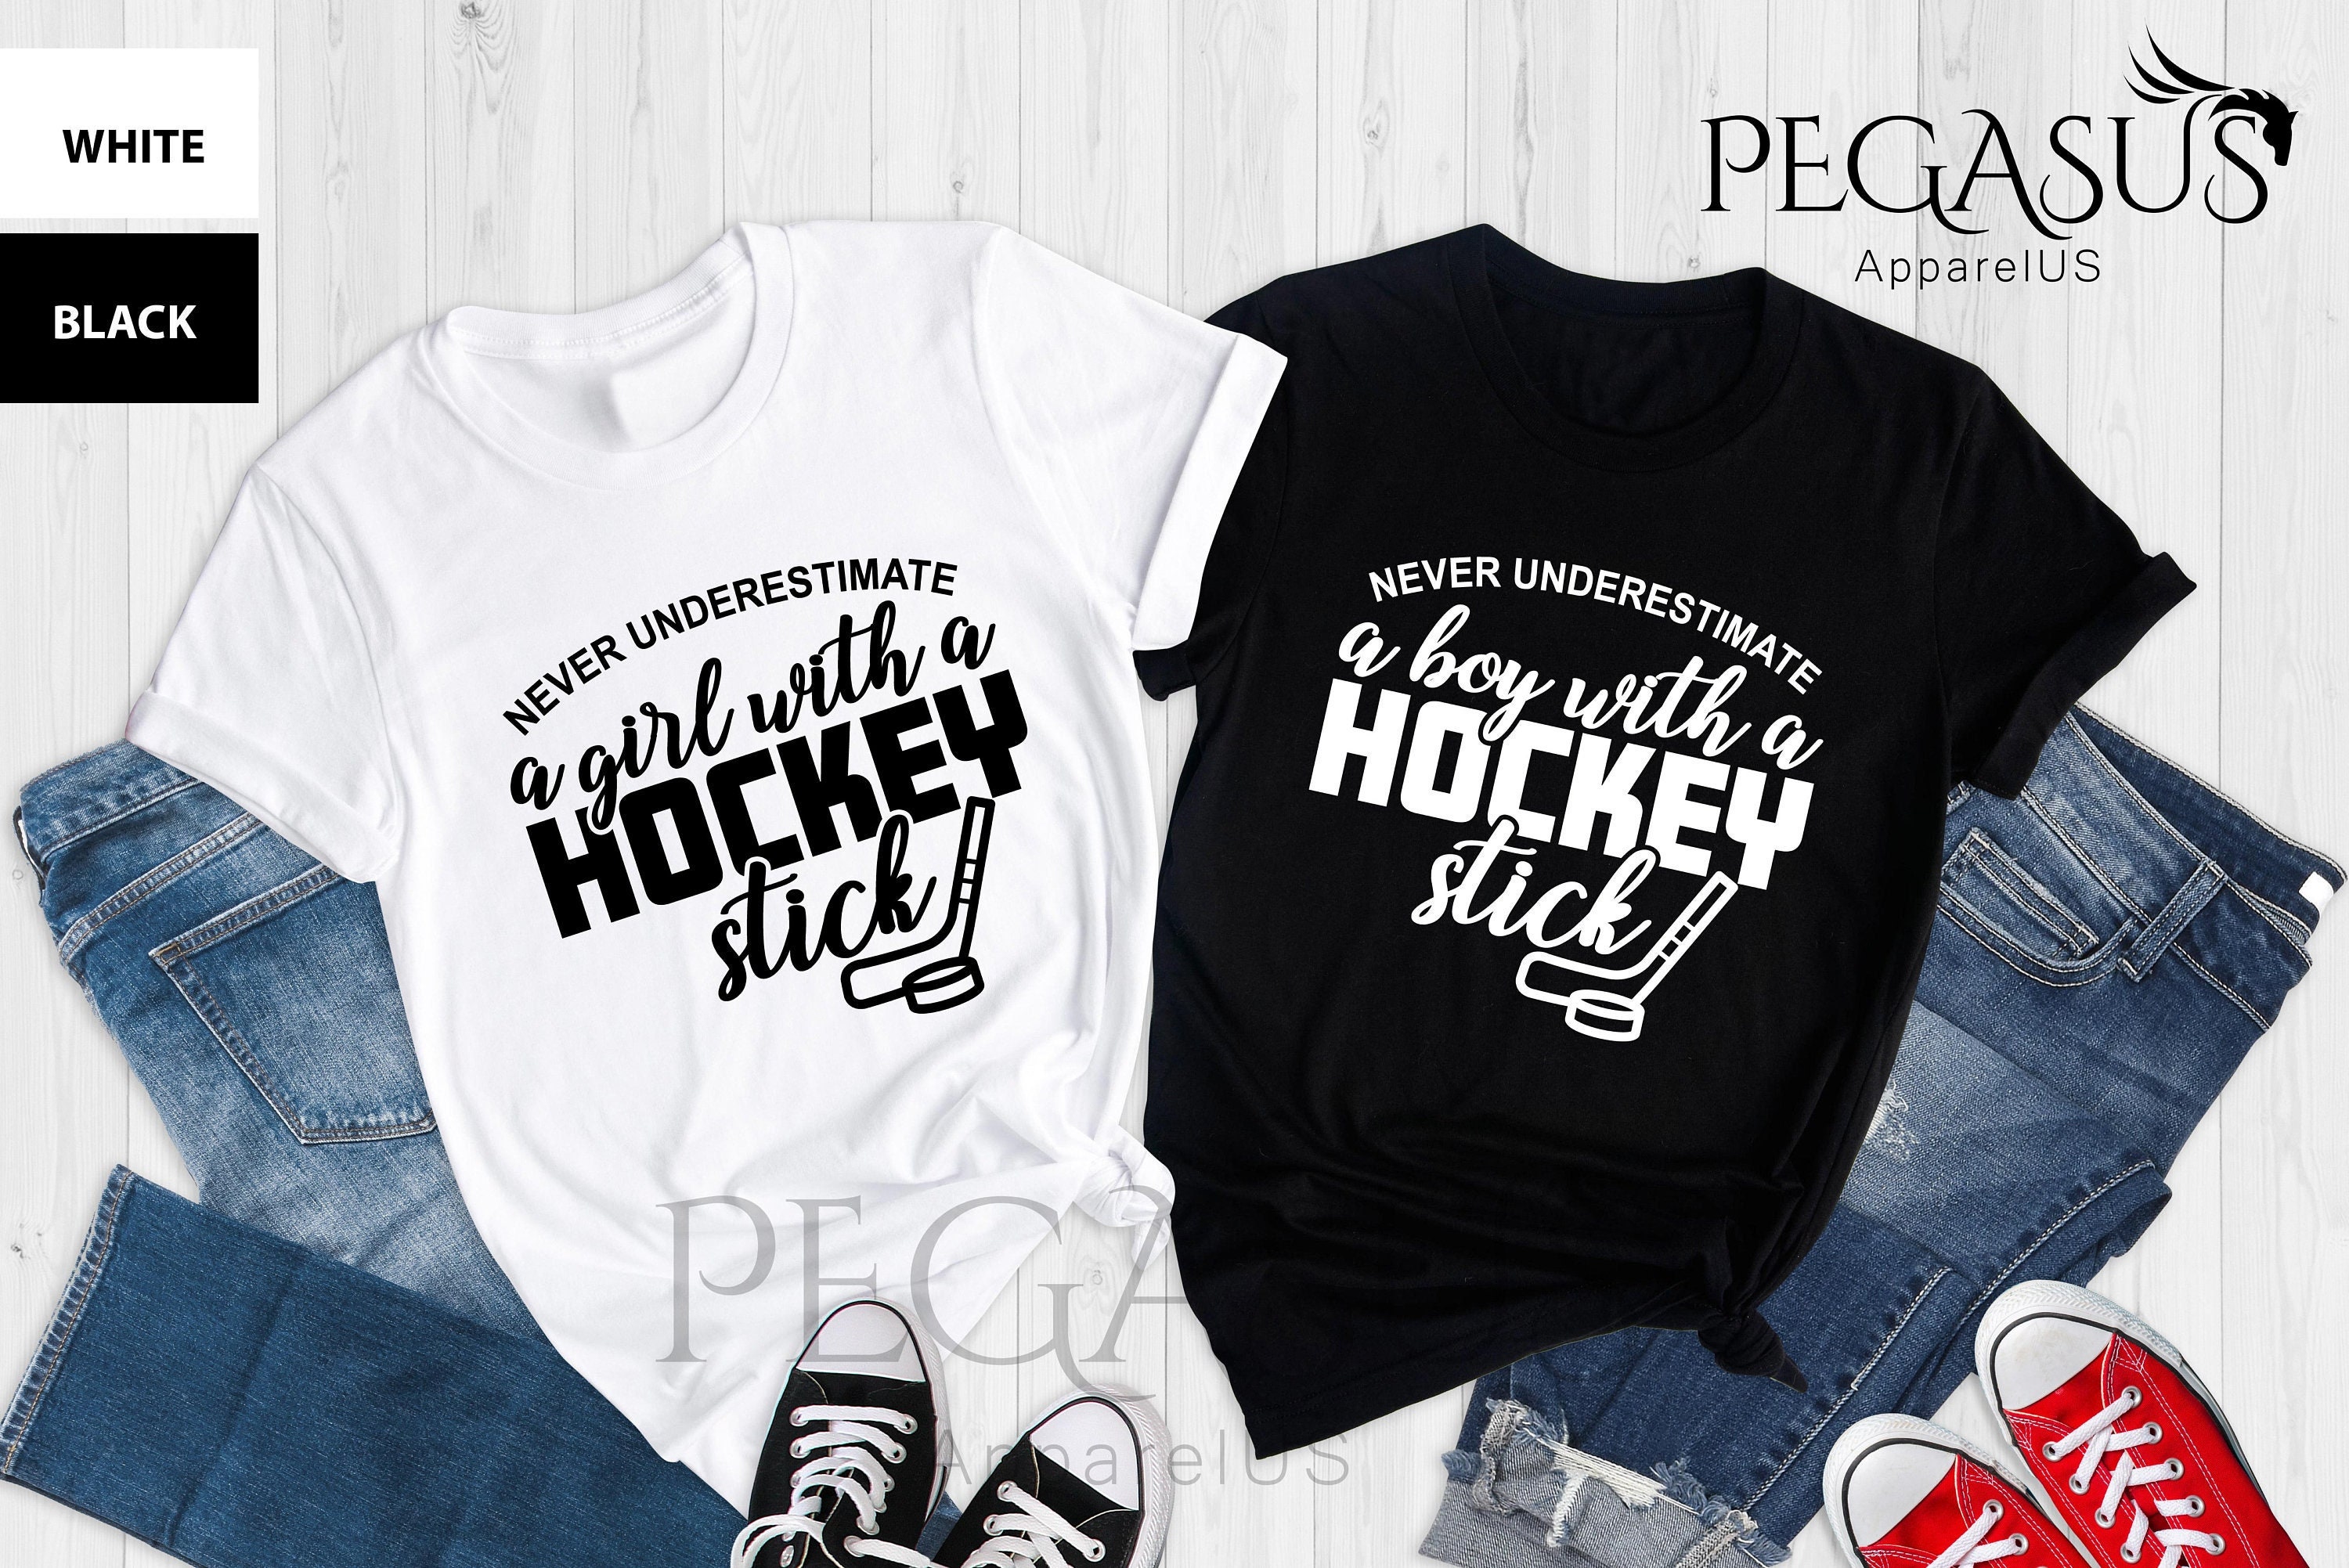 Roller Hockey T-Shirt for Girls, Women, Boys & Men